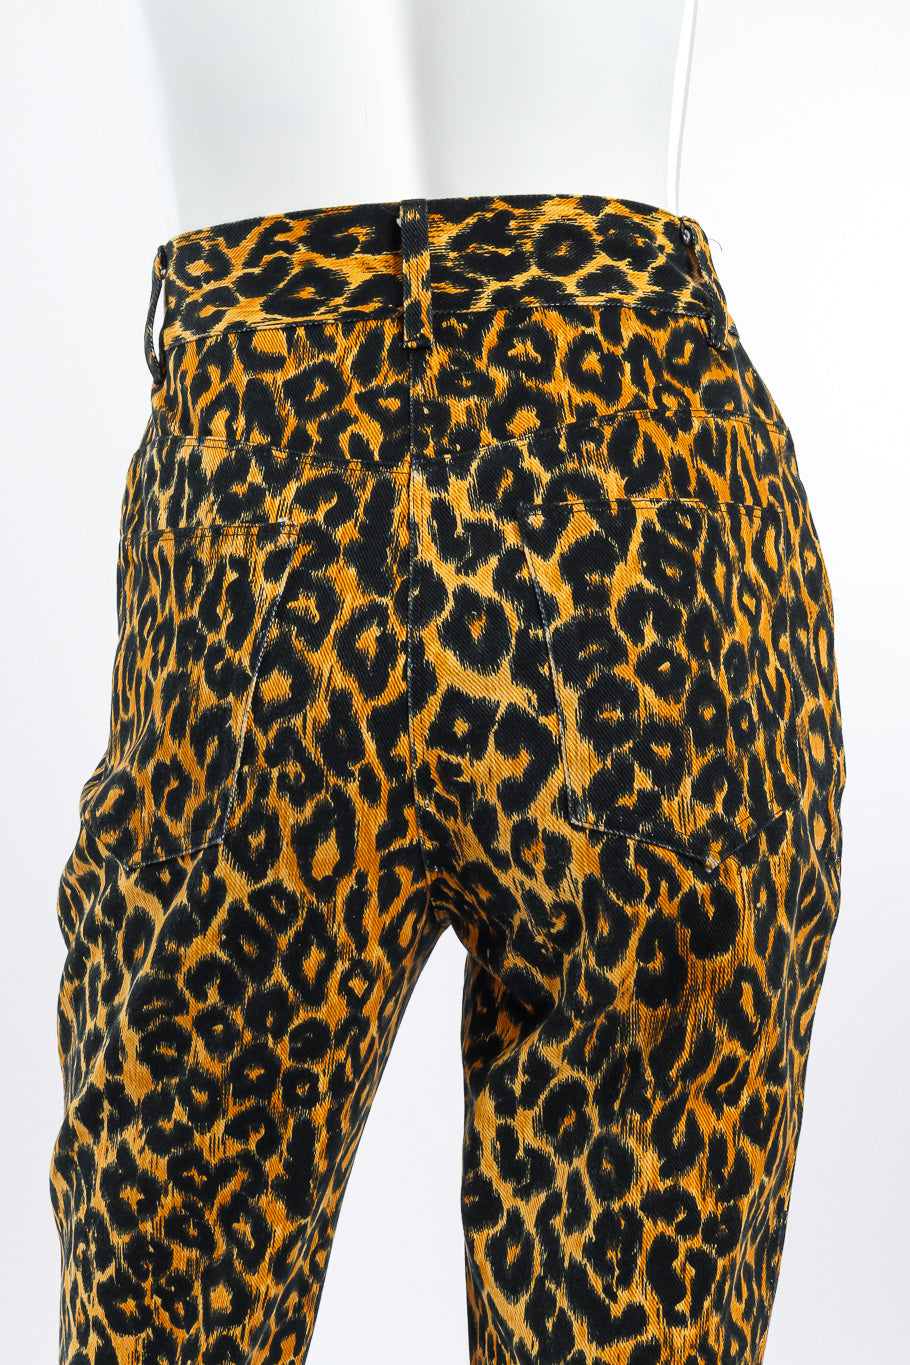 Versus Versace Leopard Print Denim Pant back view closeup on mannequin @Recessla